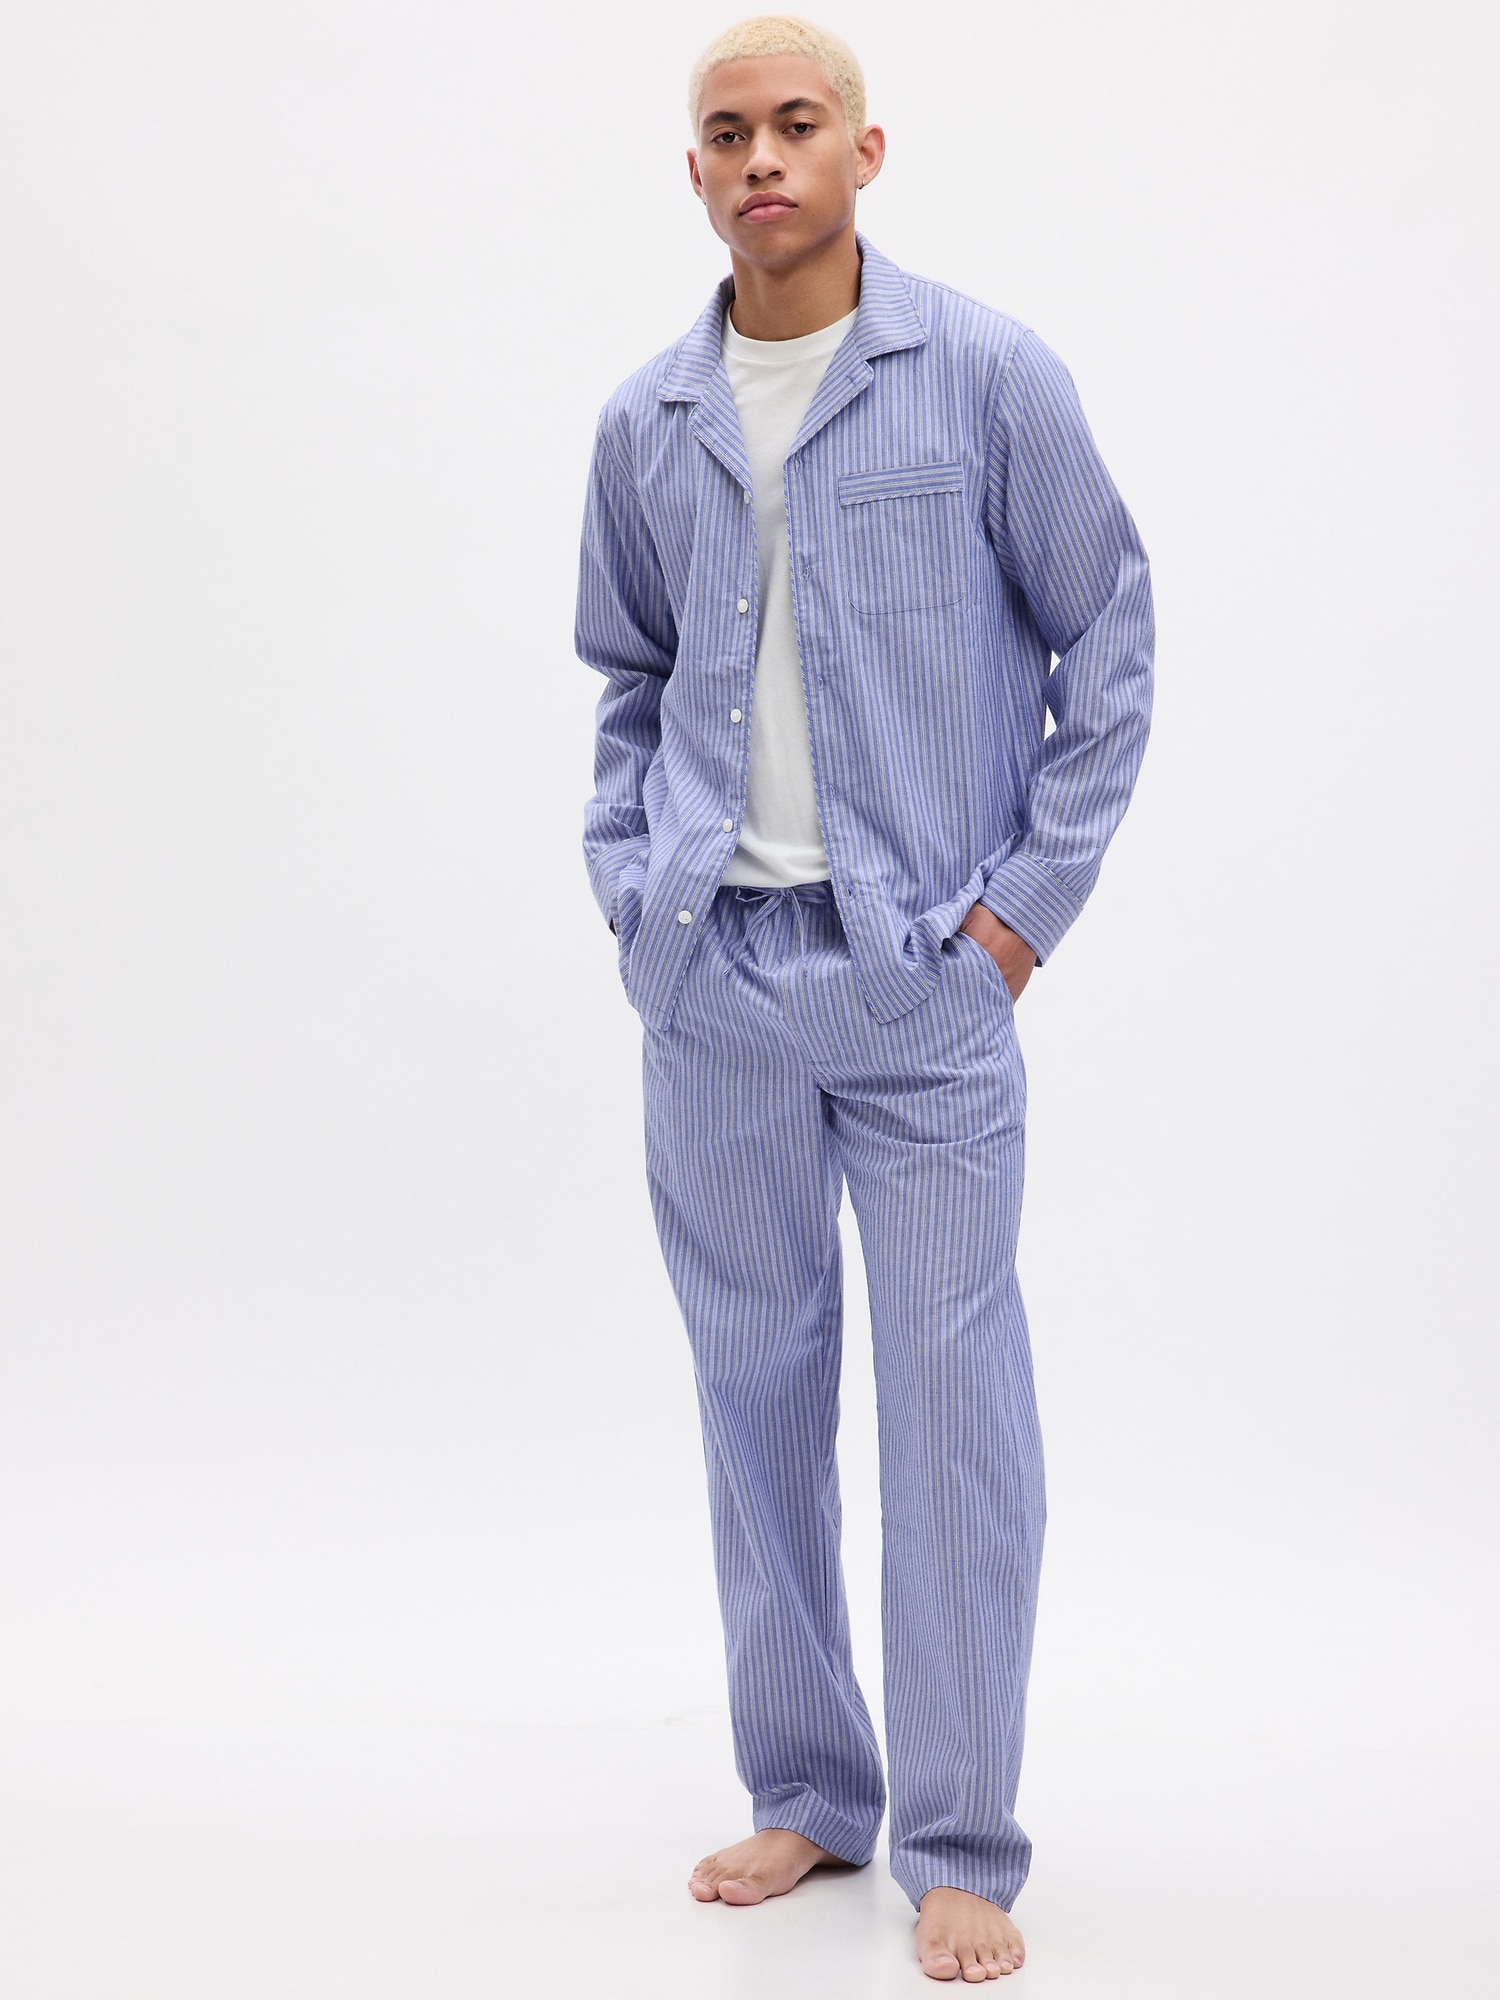 Leisureland Men's Cotton Poplin Pajama Set Stripe Black